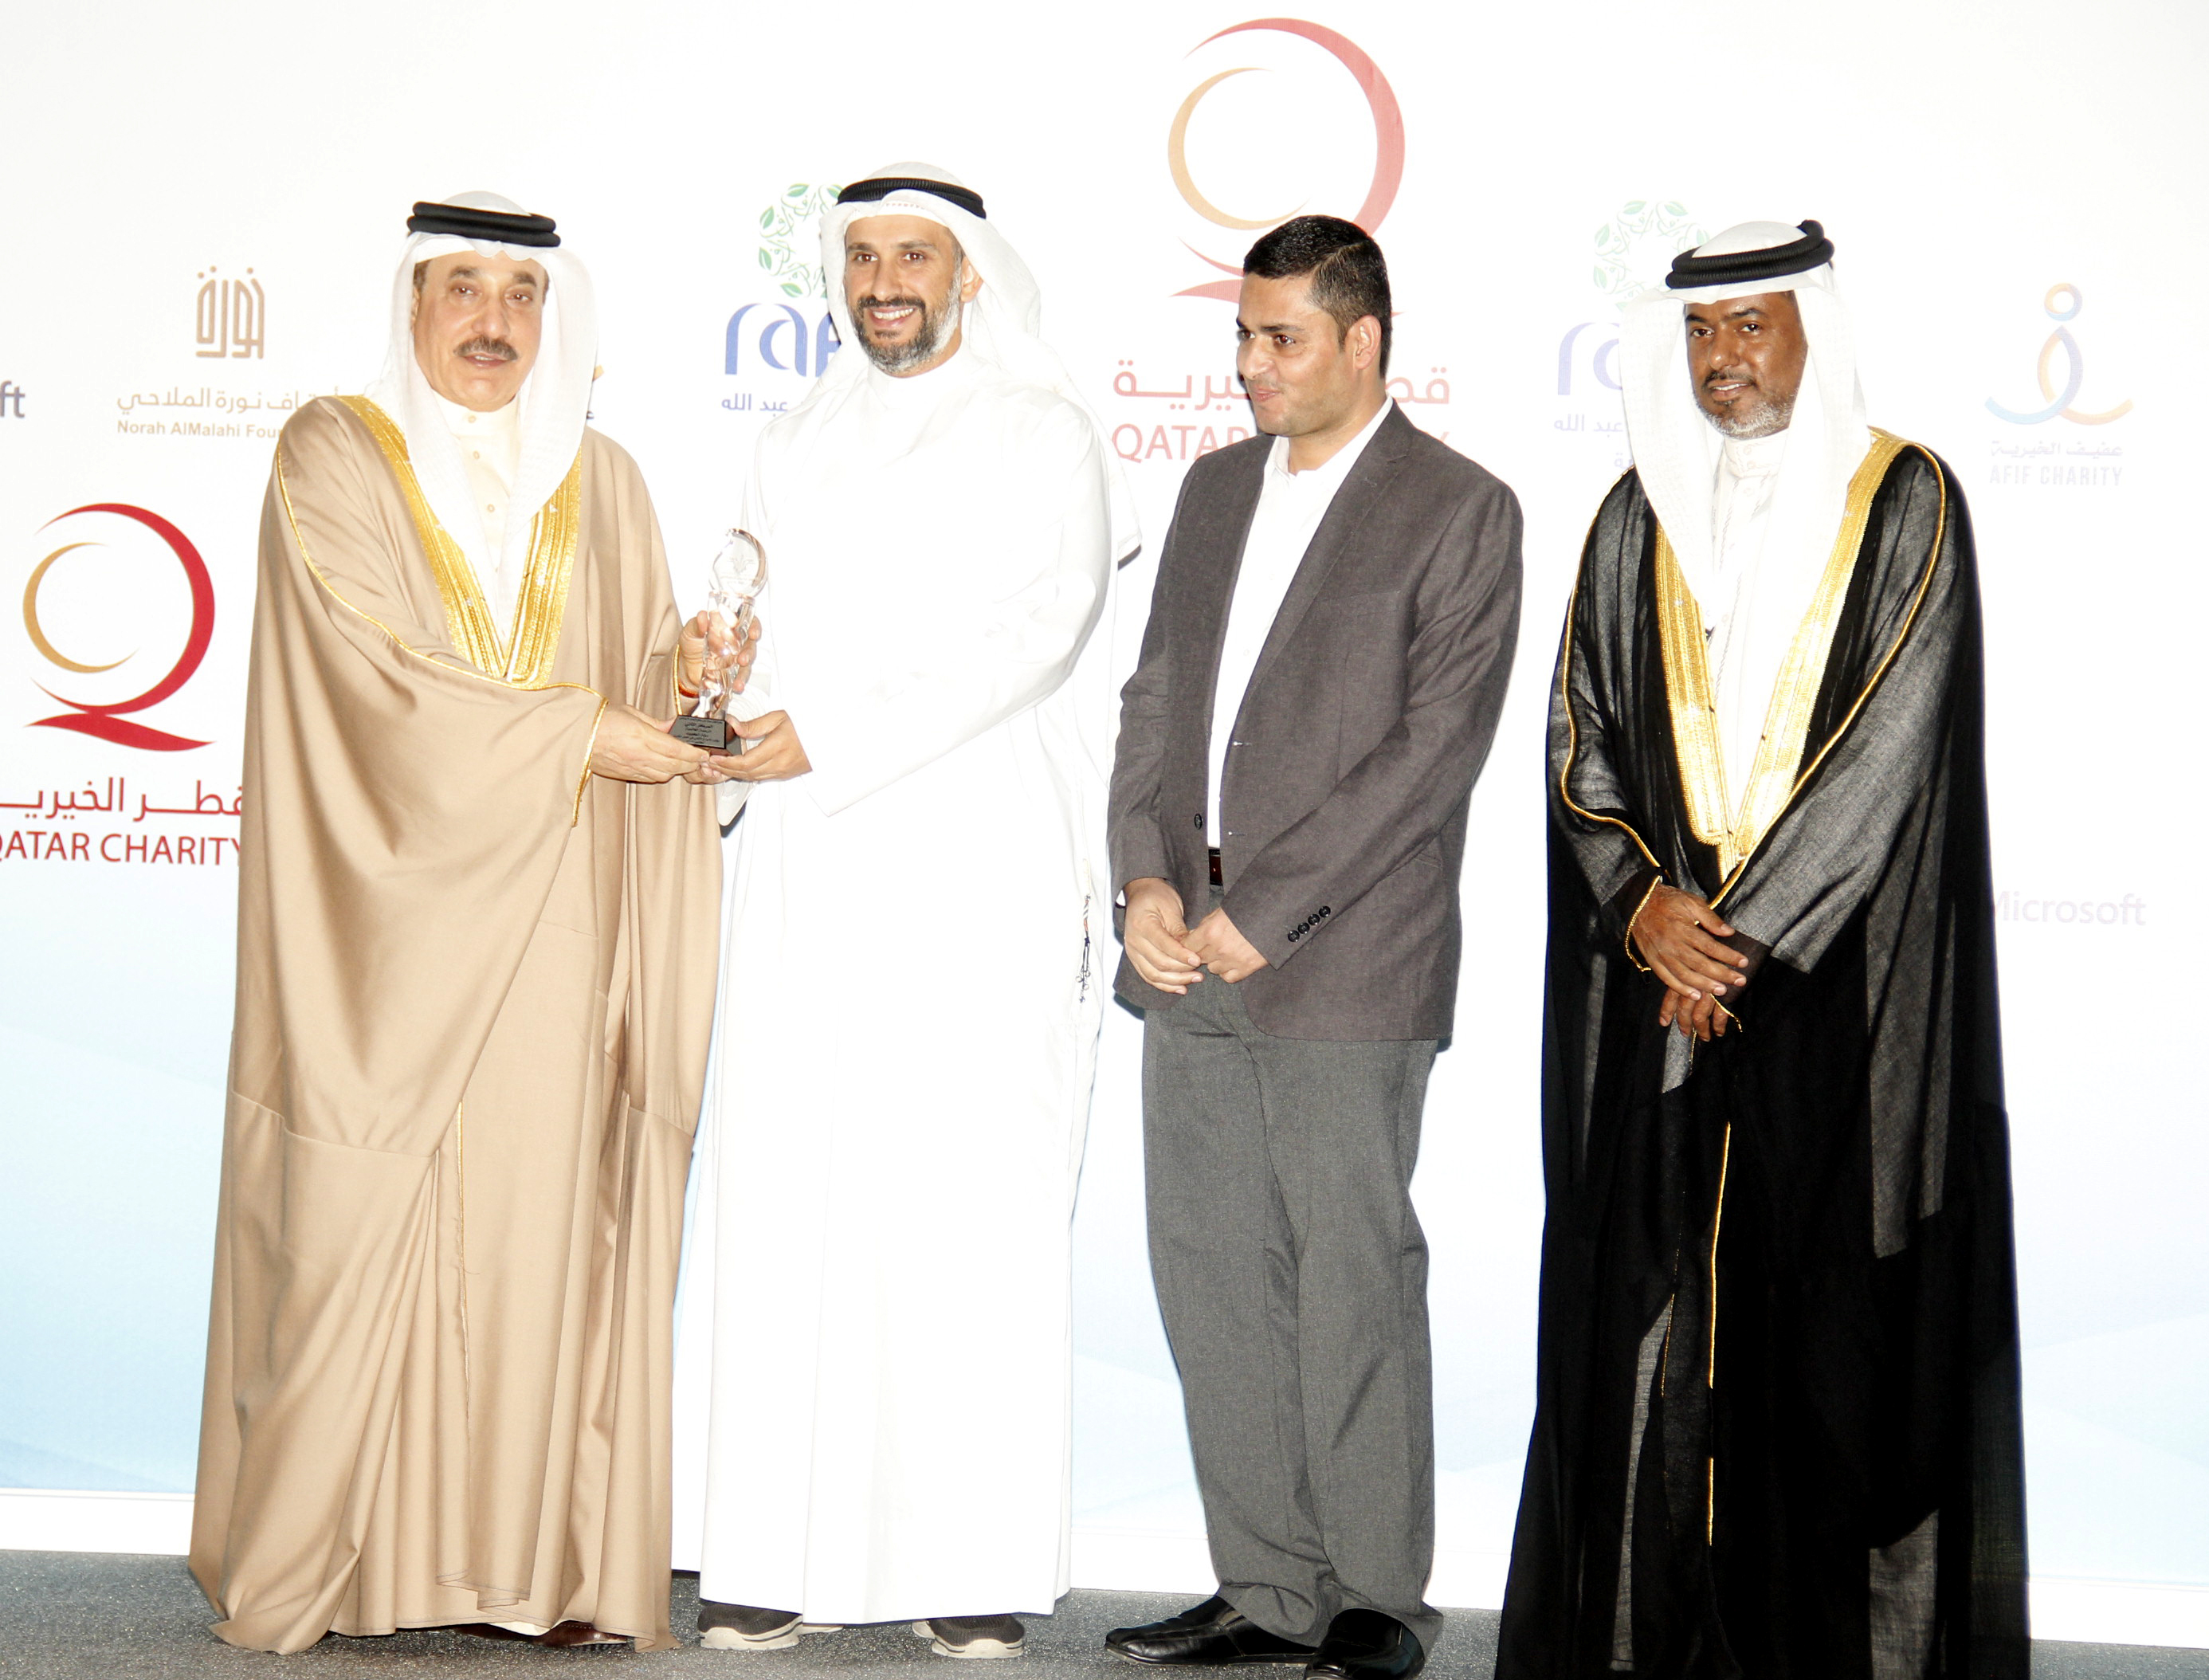 جمعية الرحمة التابعة لجمعية الاصلاح الاجتماعي تتسلم الجائزة من وزير العمل البحريني جميل حميدان